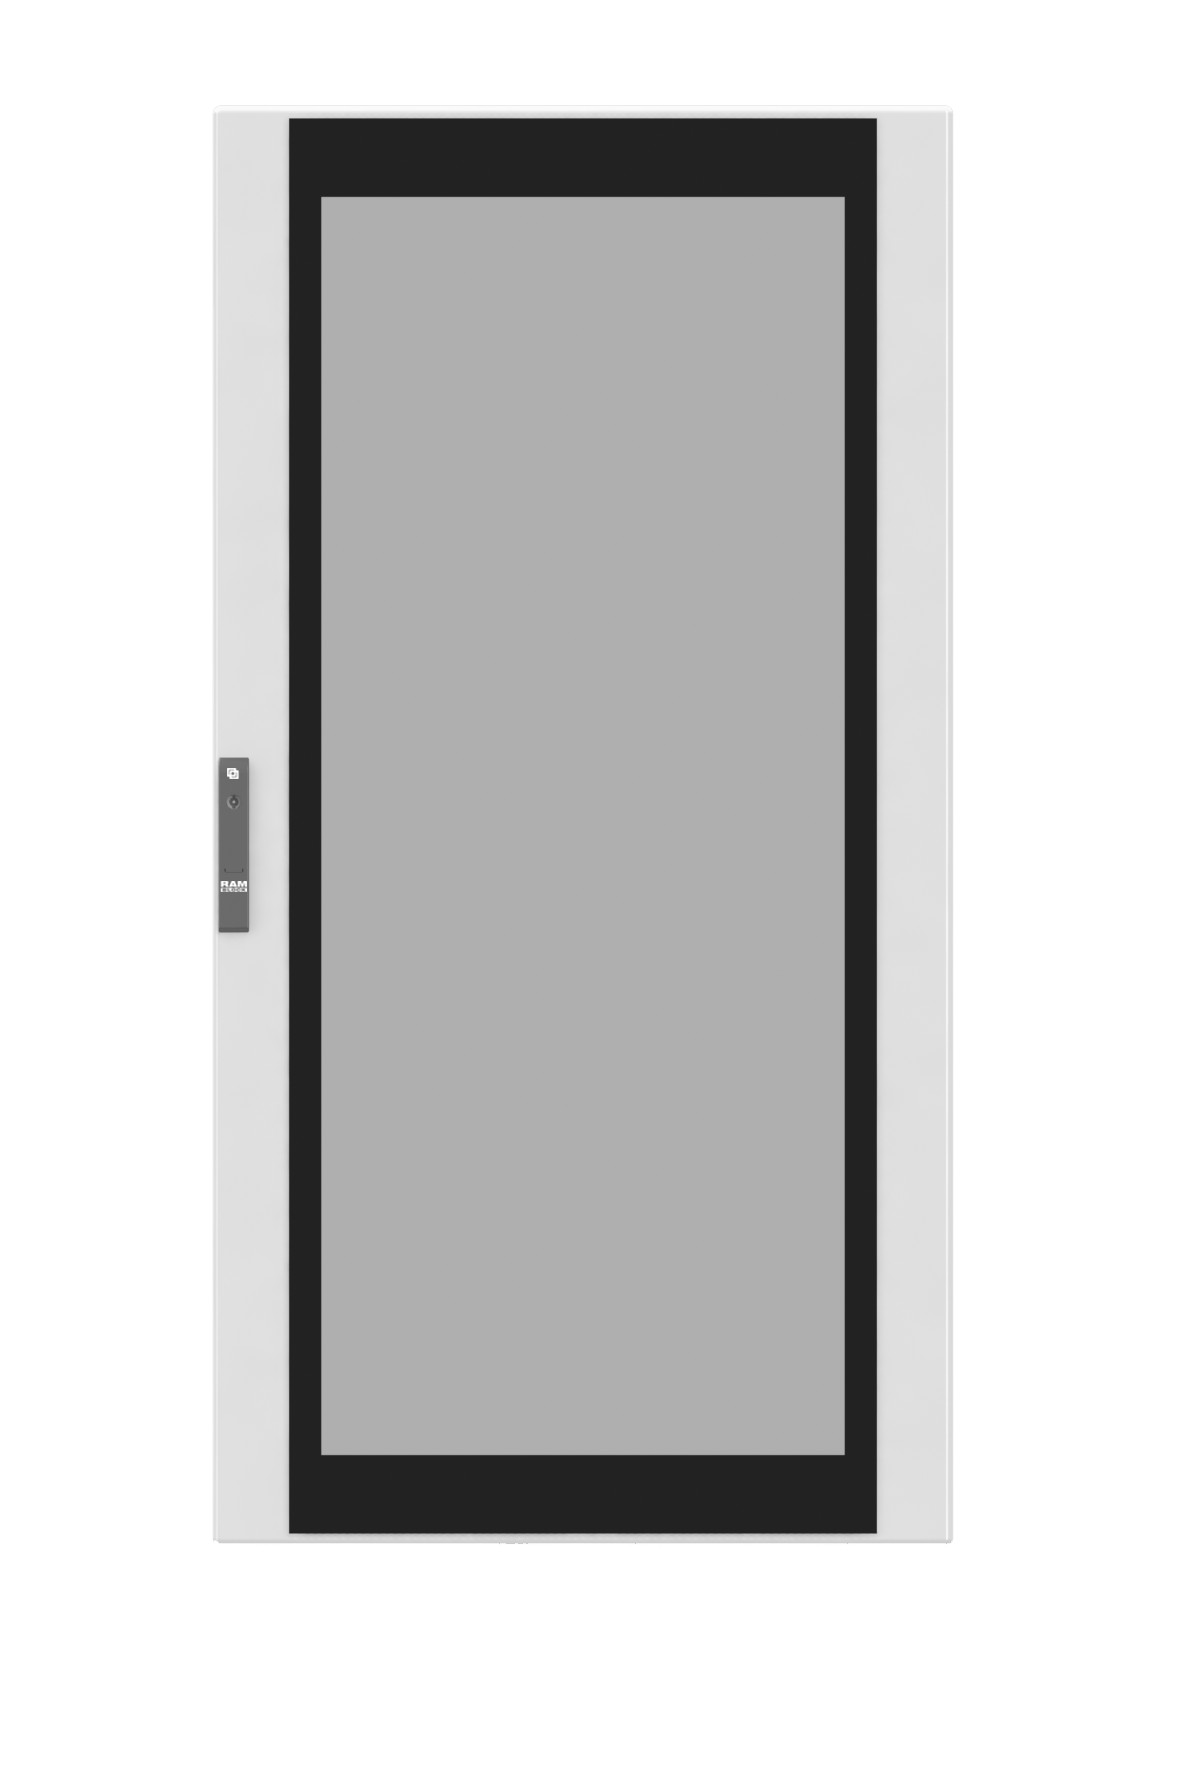 Дверь сплошная для шкафов dae cqe 2000 x 600 мм